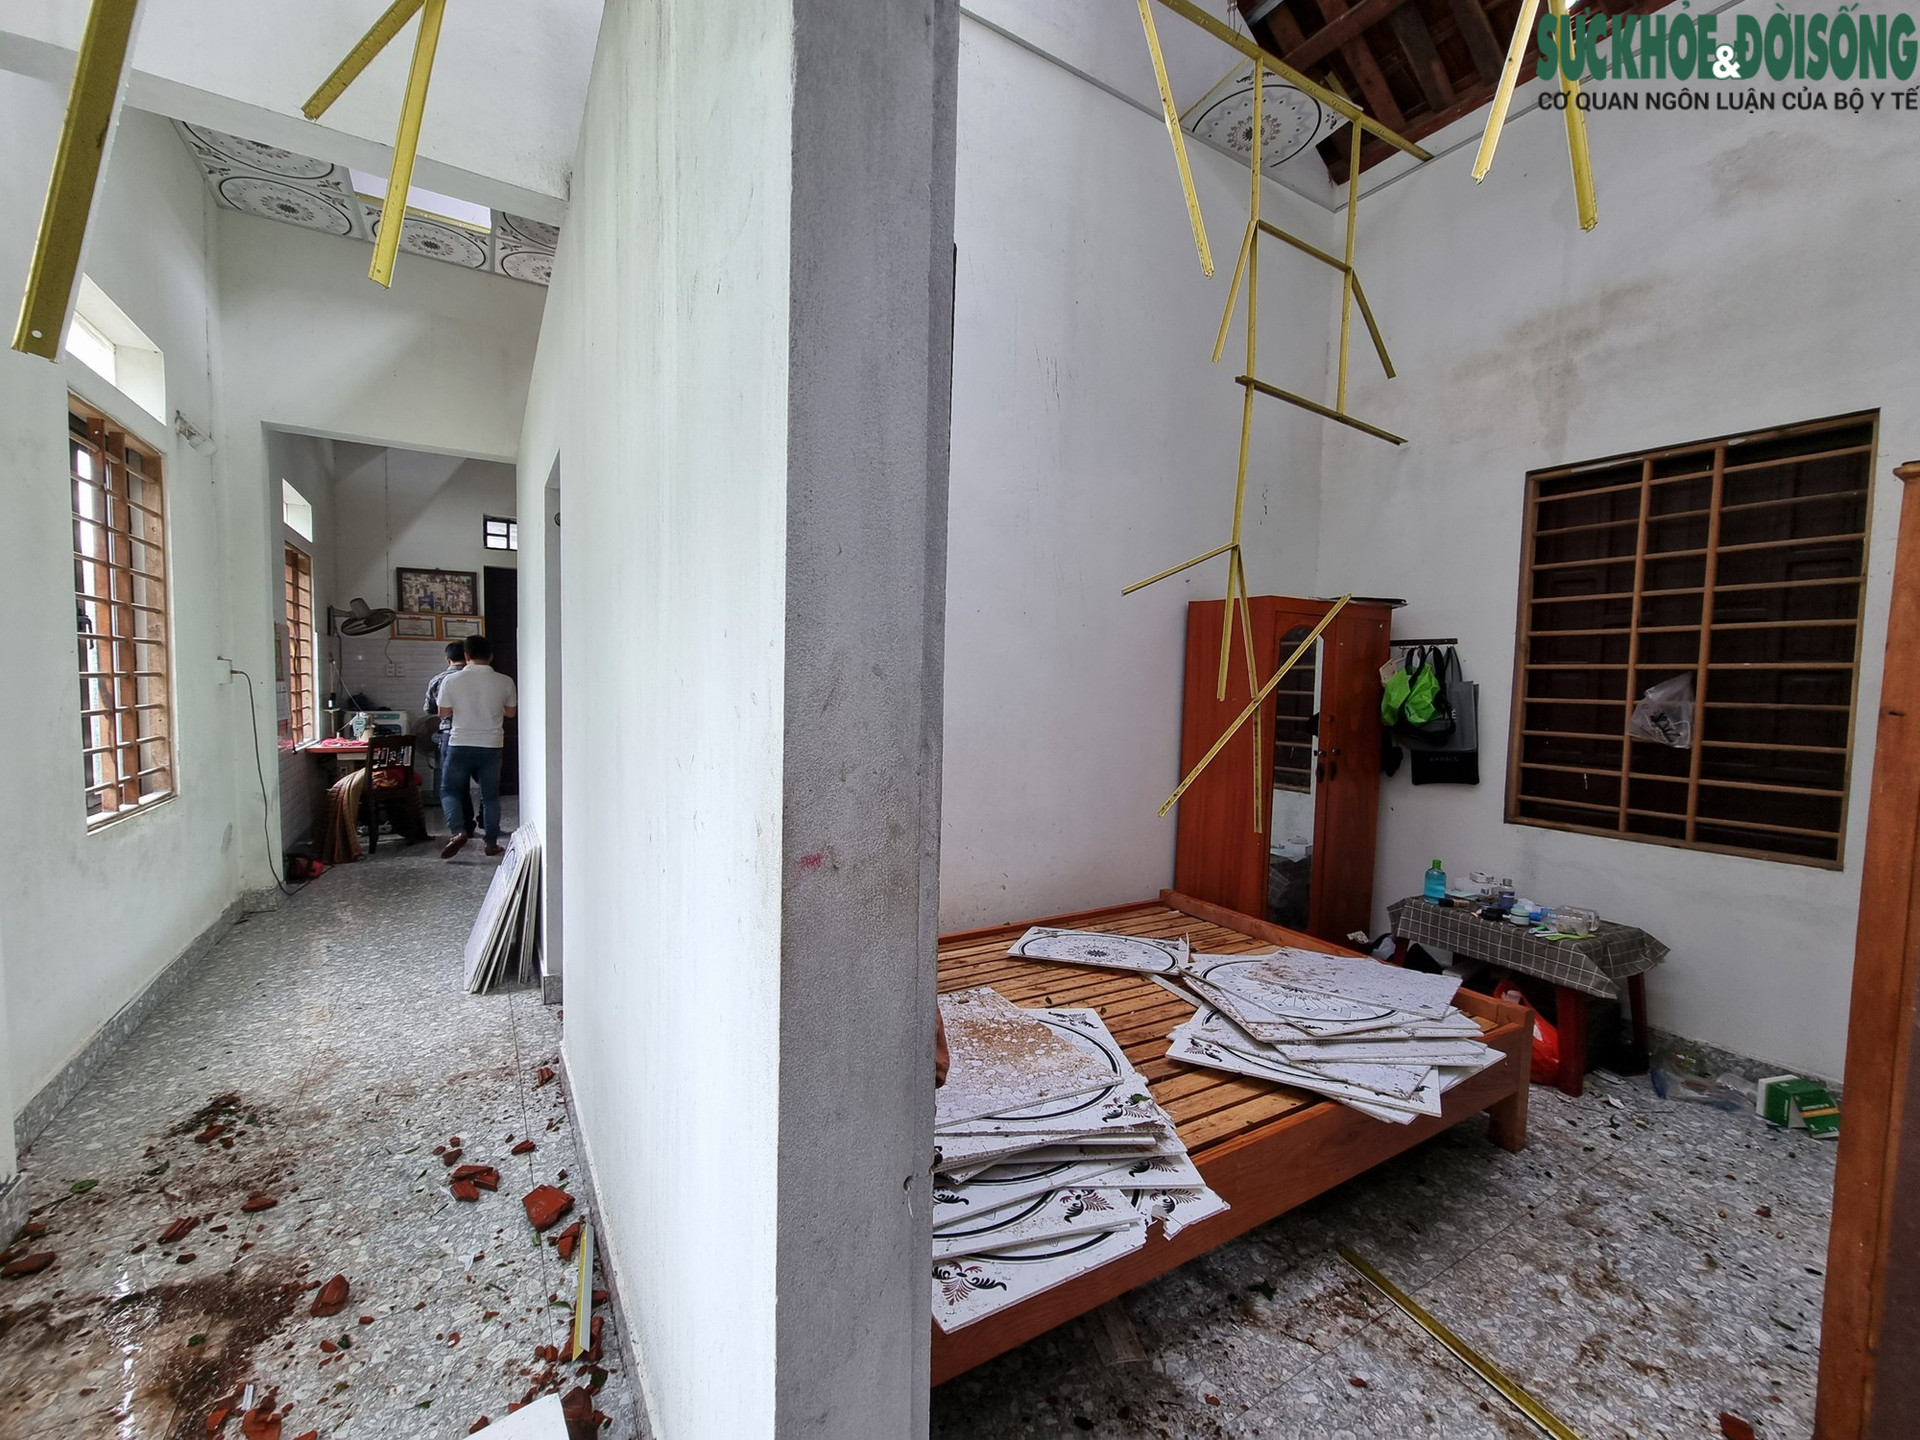 Nhà cửa tan hoang sau bão Noru, người dân miền biển Thừa Thiên Huế vẫn chưa hết bàng hoàng - Ảnh 2.